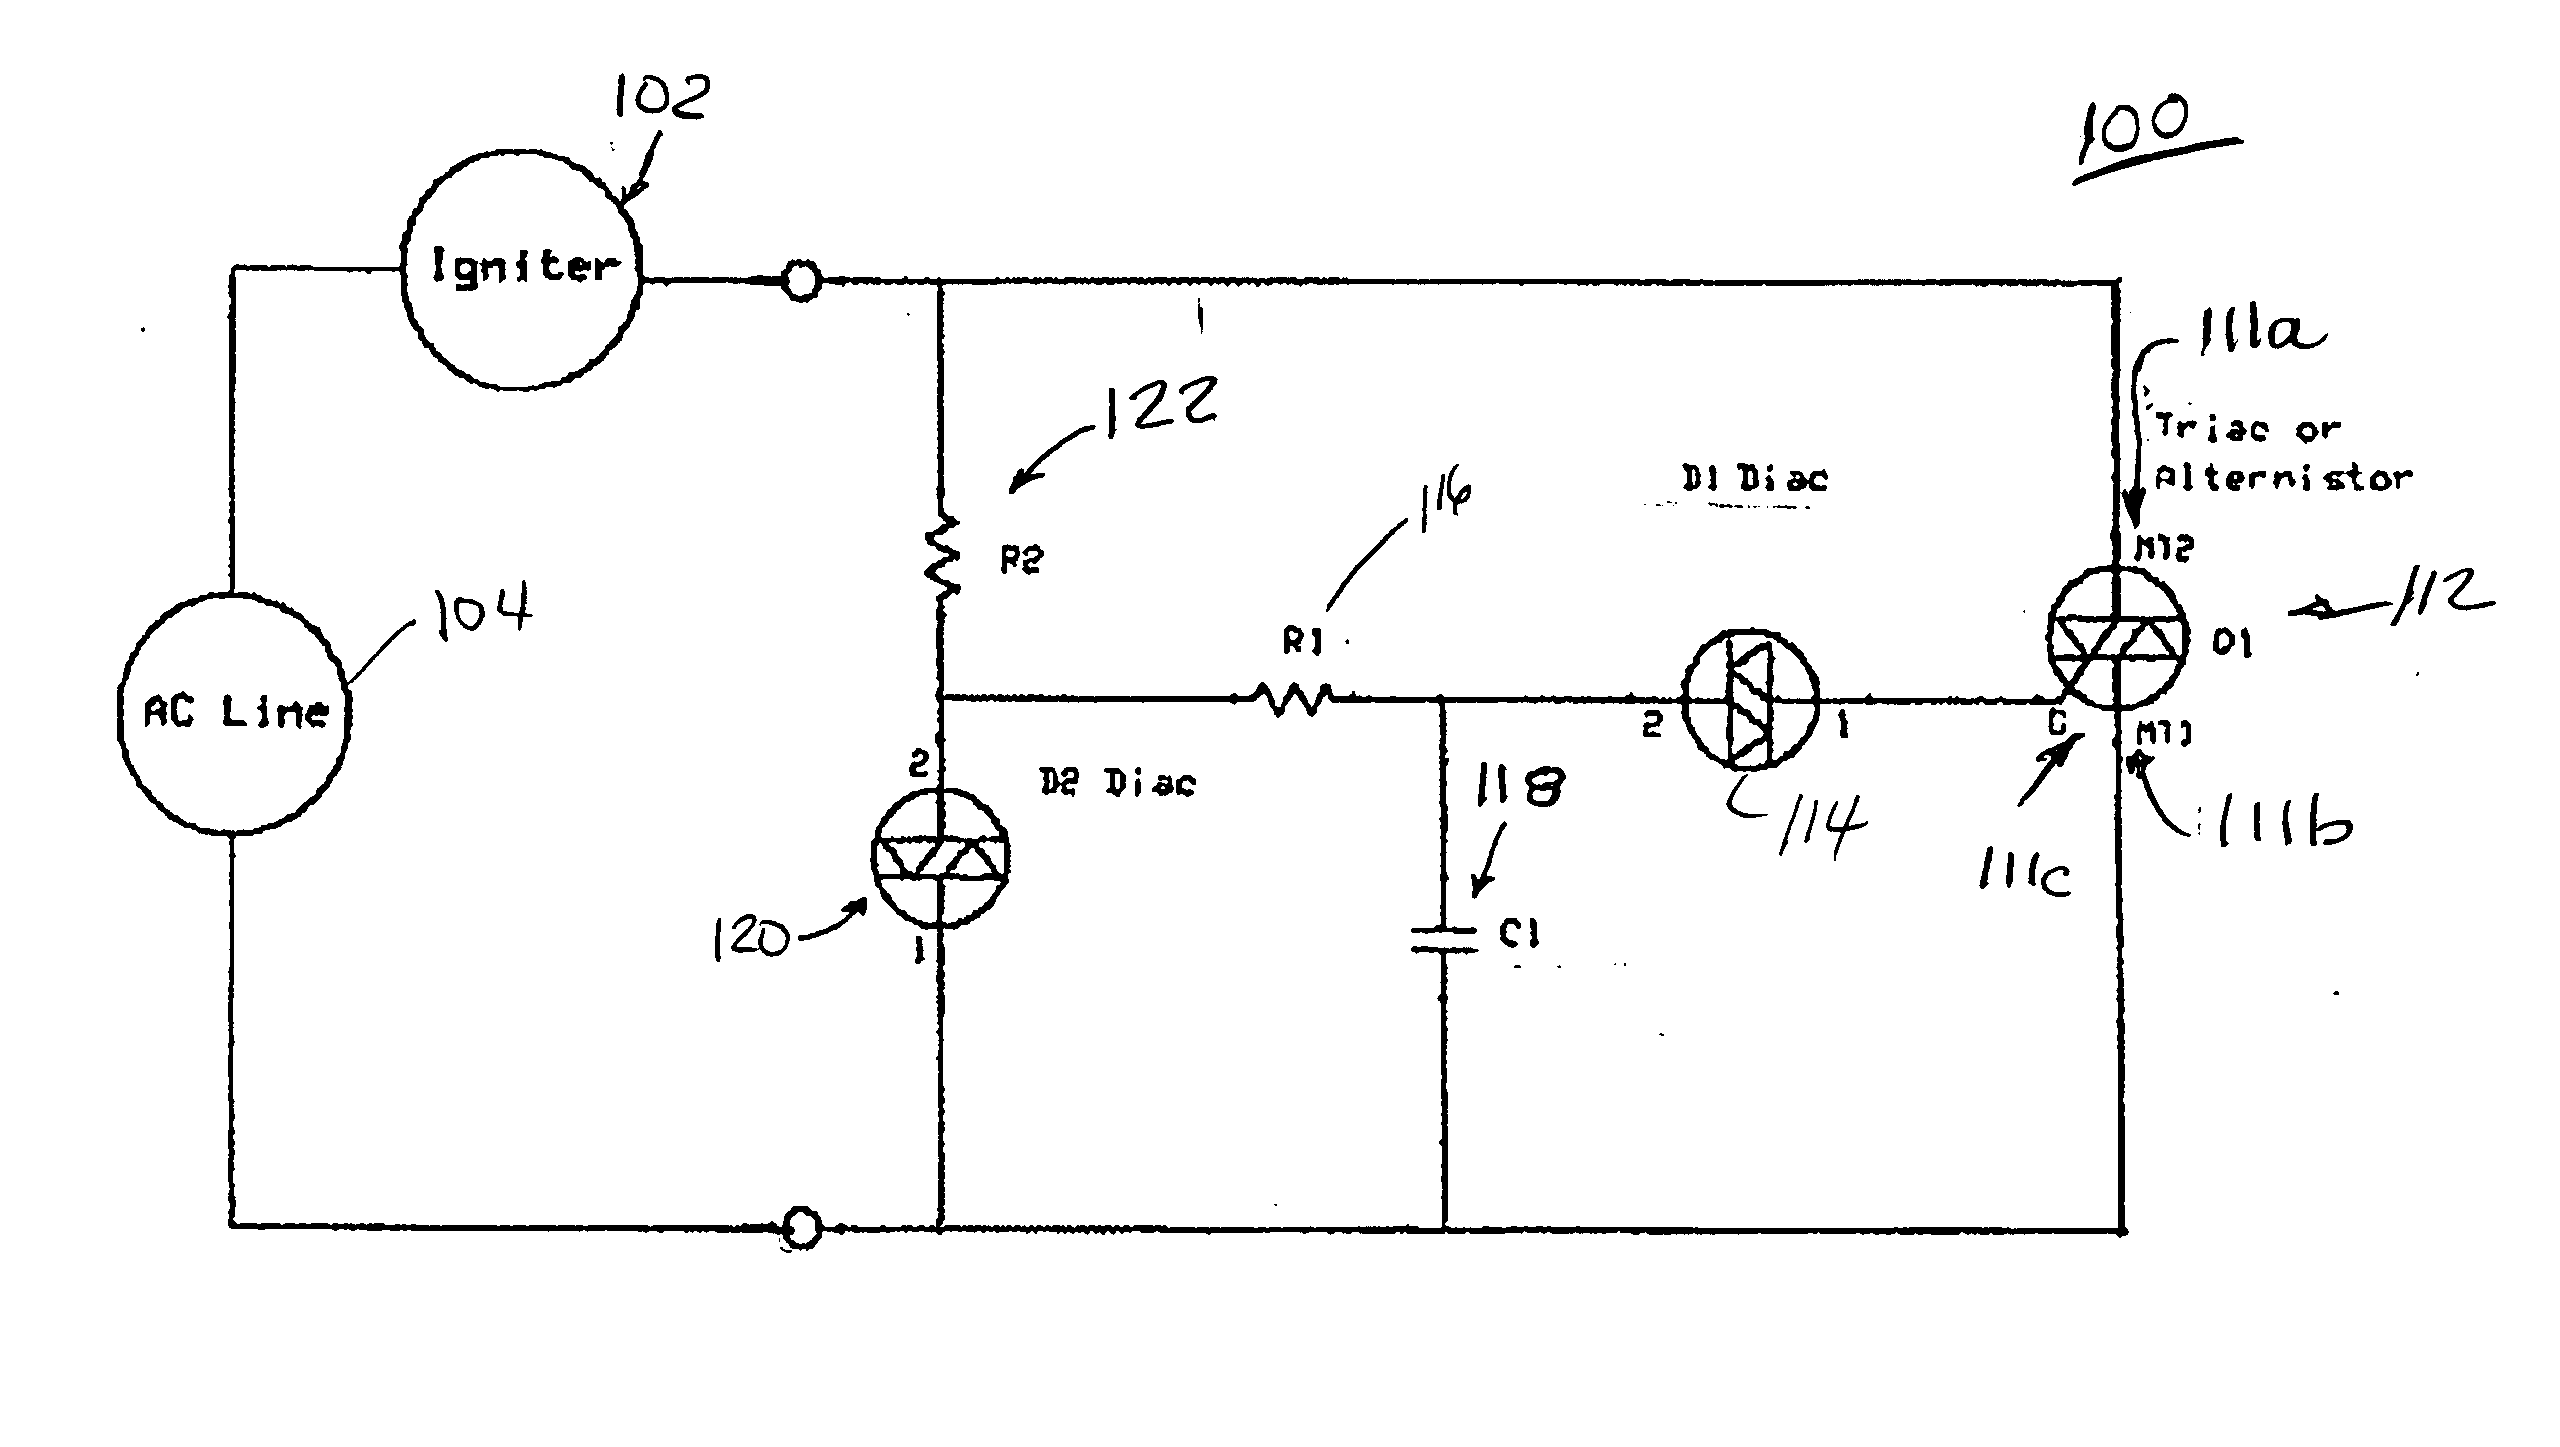 Igniter voltage compensation circuit